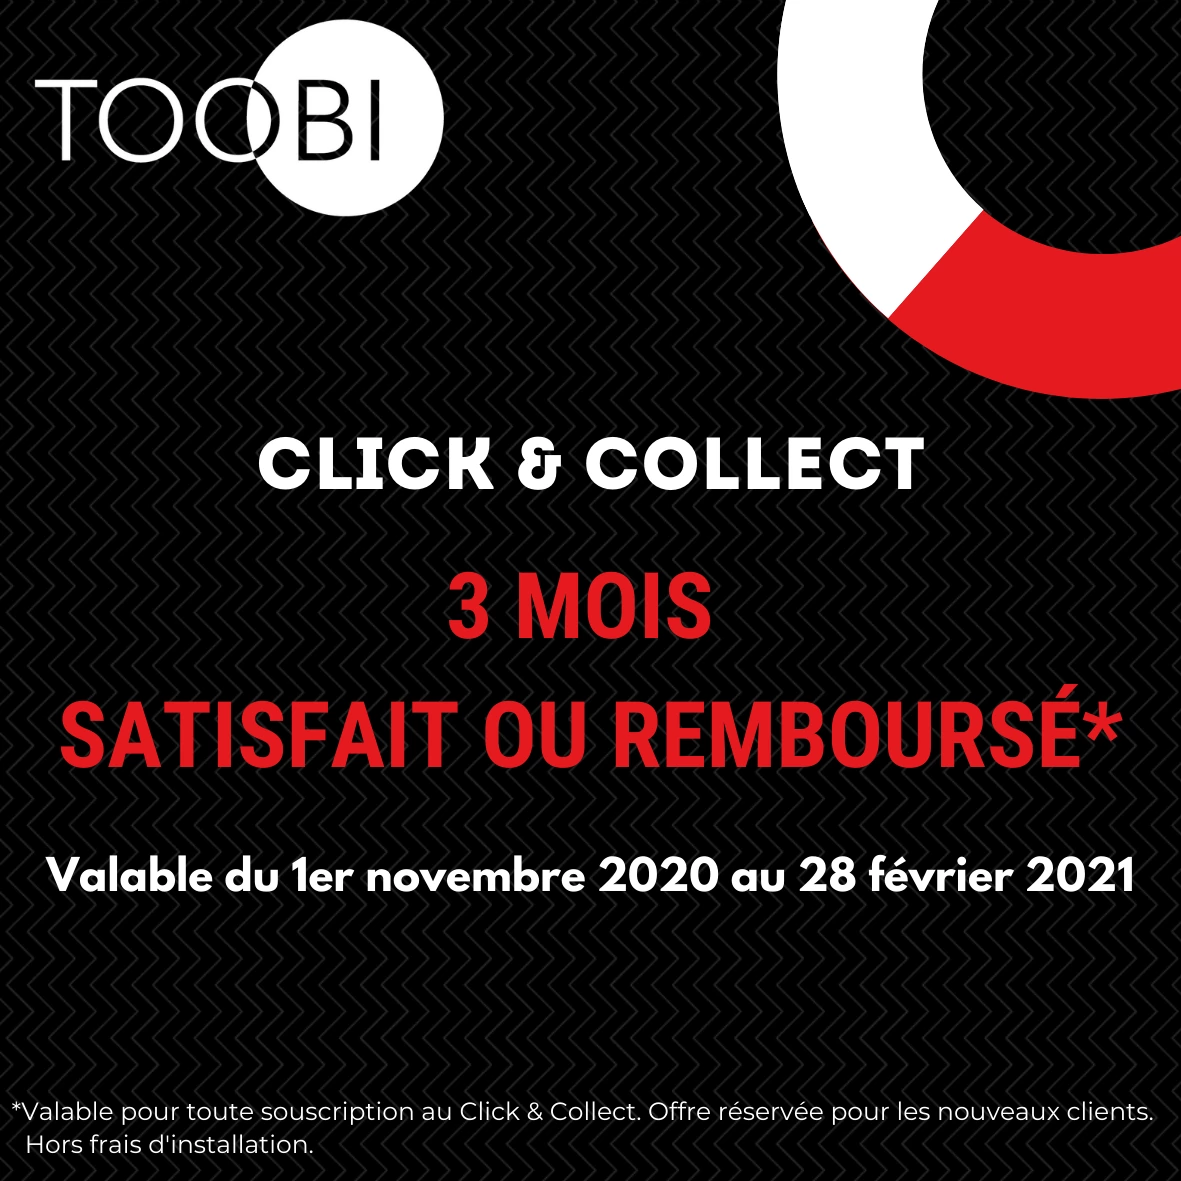 https://blog.toobi.fr/assets/img/articles/toobi-restaurants-commerces-solution-covid-19.webp